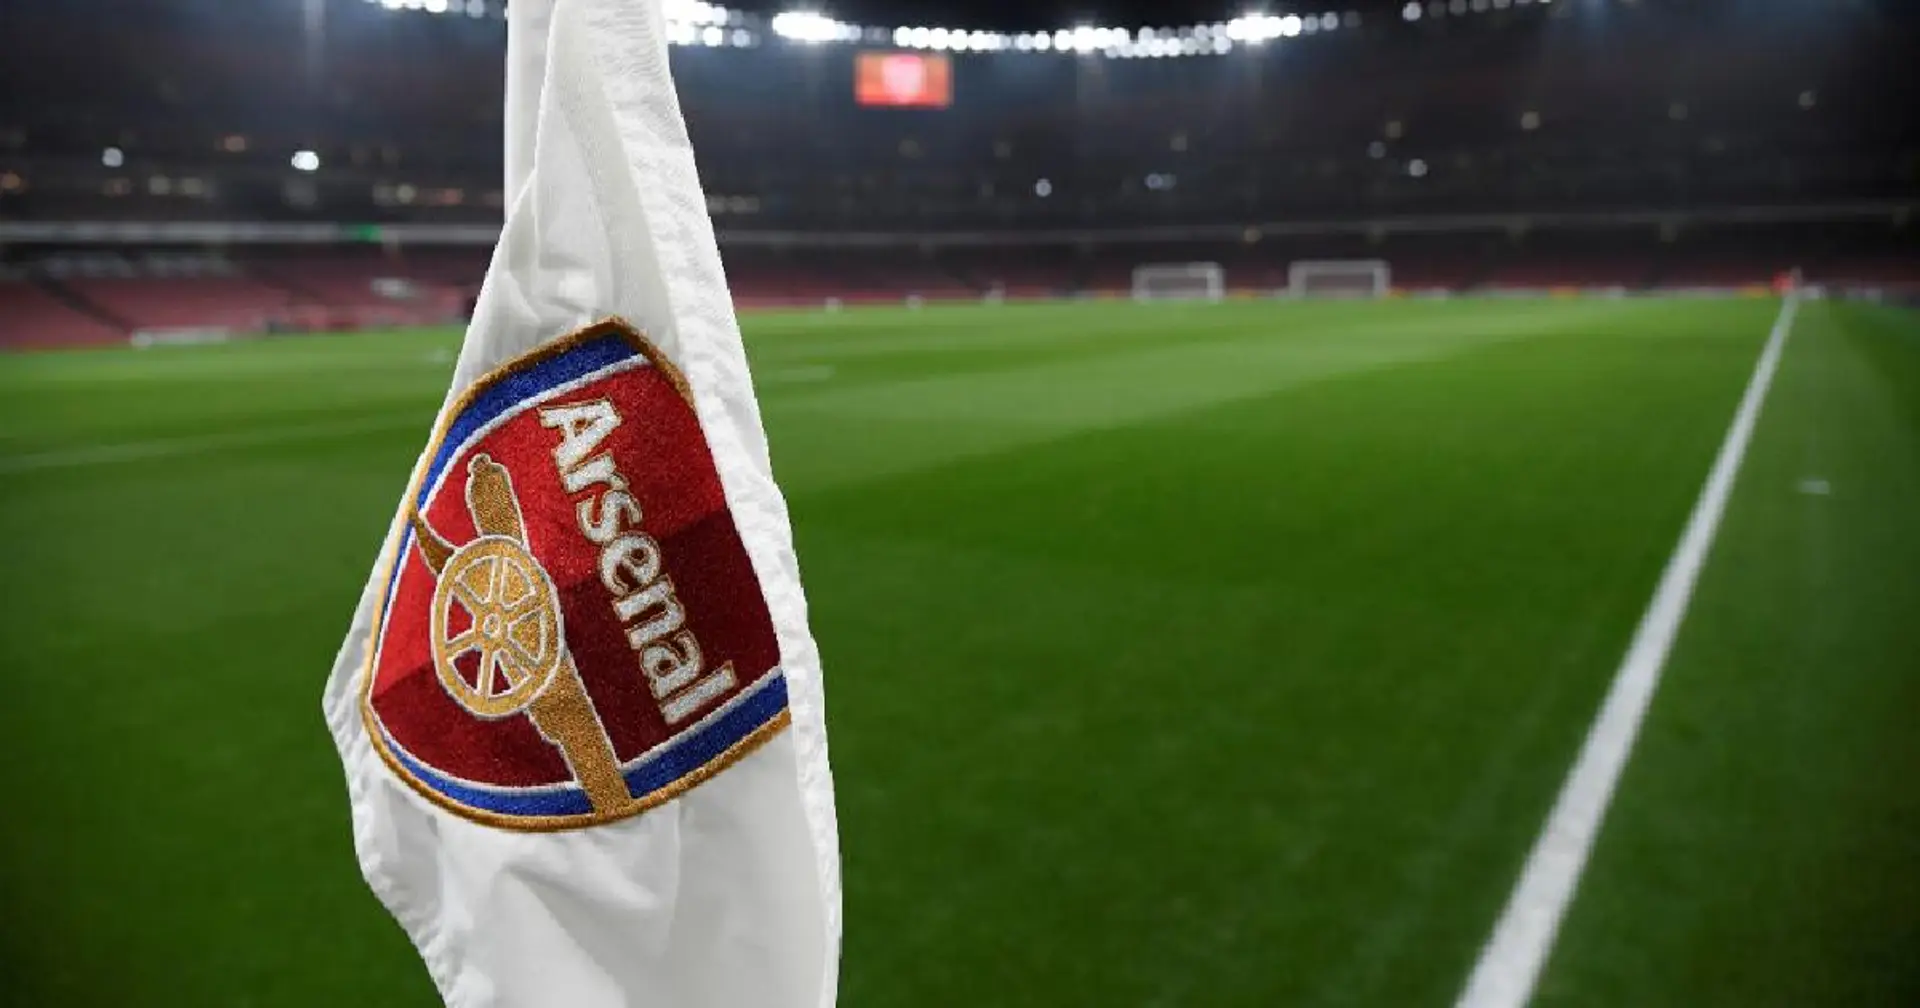 Wütende Arsenal-Fans fordern größeren Gehaltsverzicht der Spieler - was würdet ihr sagen?